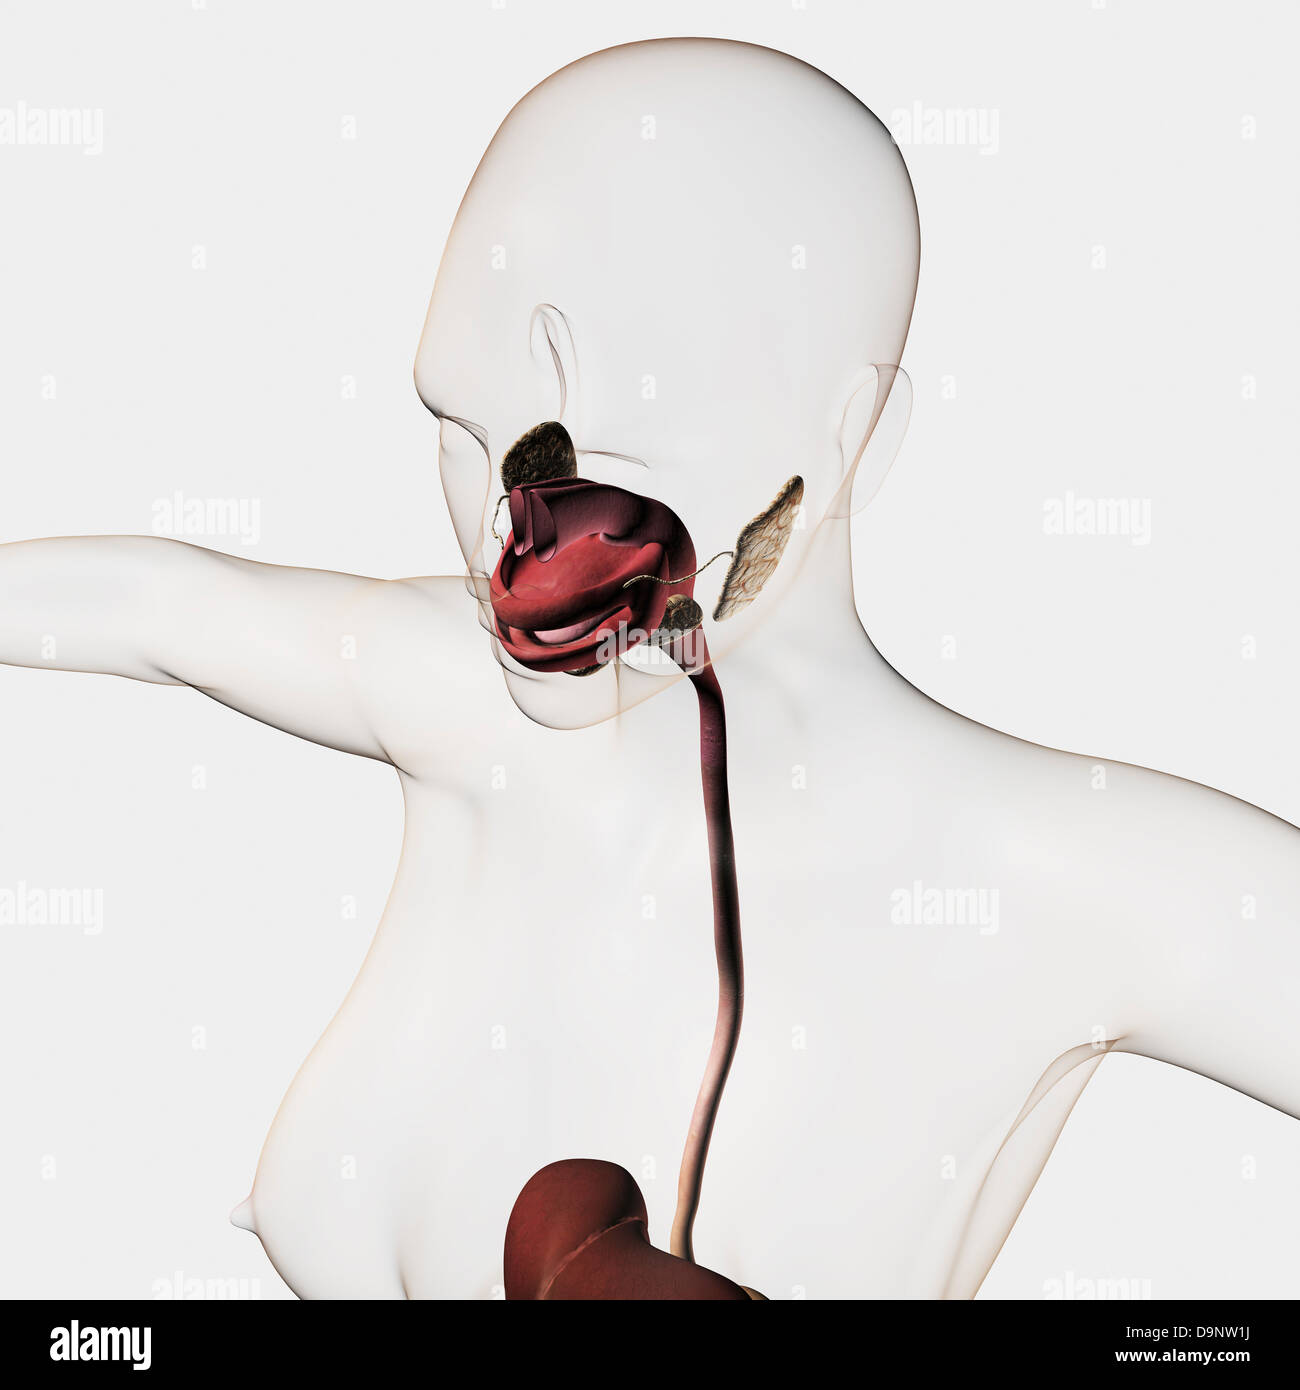 Illustration médicale du système digestif humain ; les glandes salivaires, de l'œsophage, de la cavité orale. Banque D'Images